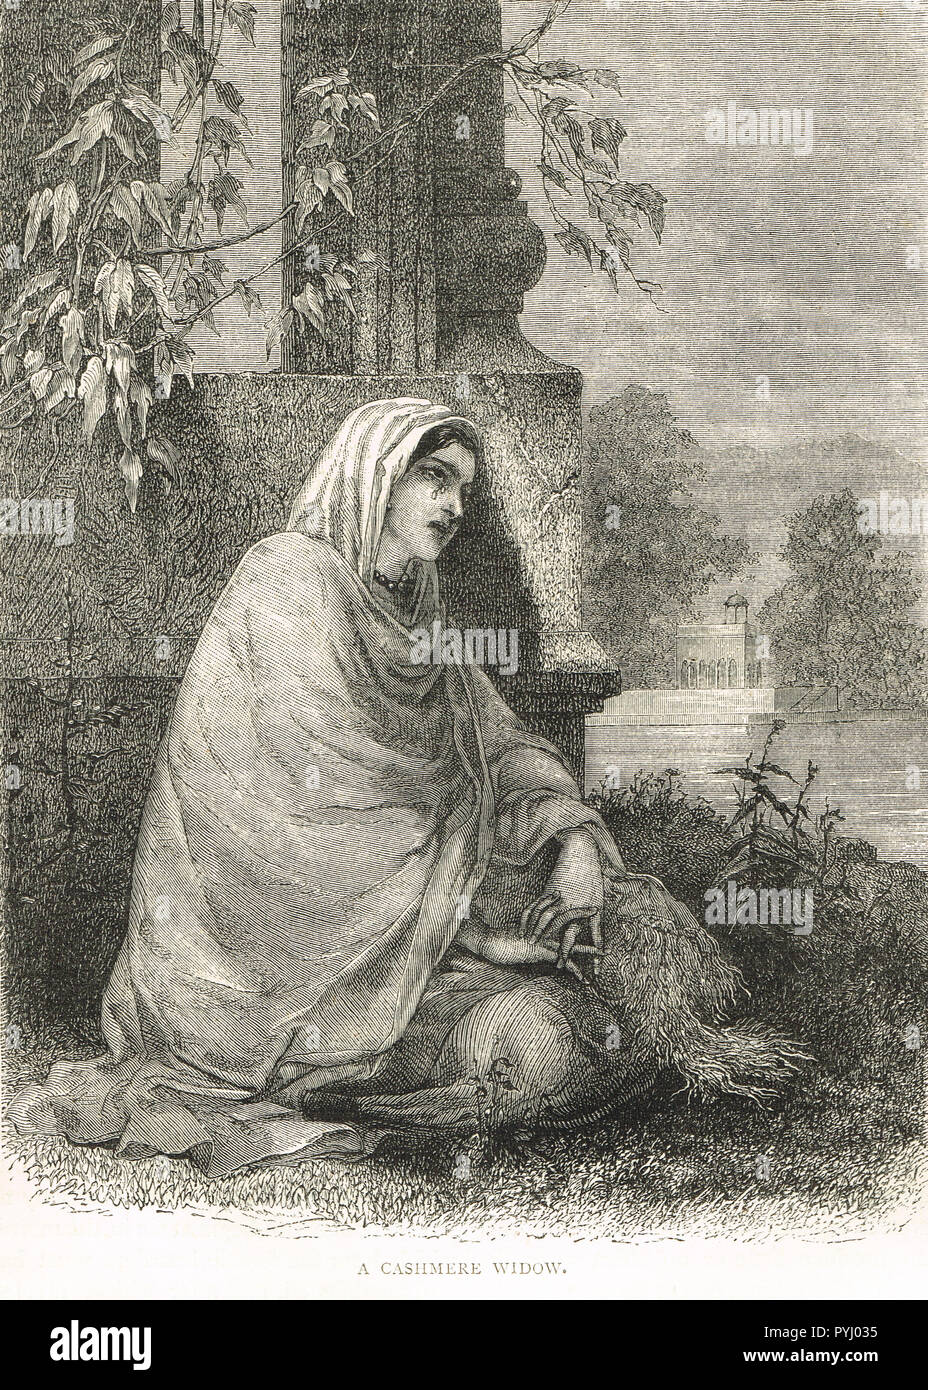 Une veuve du Cachemire indien, la famine de 1876-1878, au Cachemire, en Inde Banque D'Images